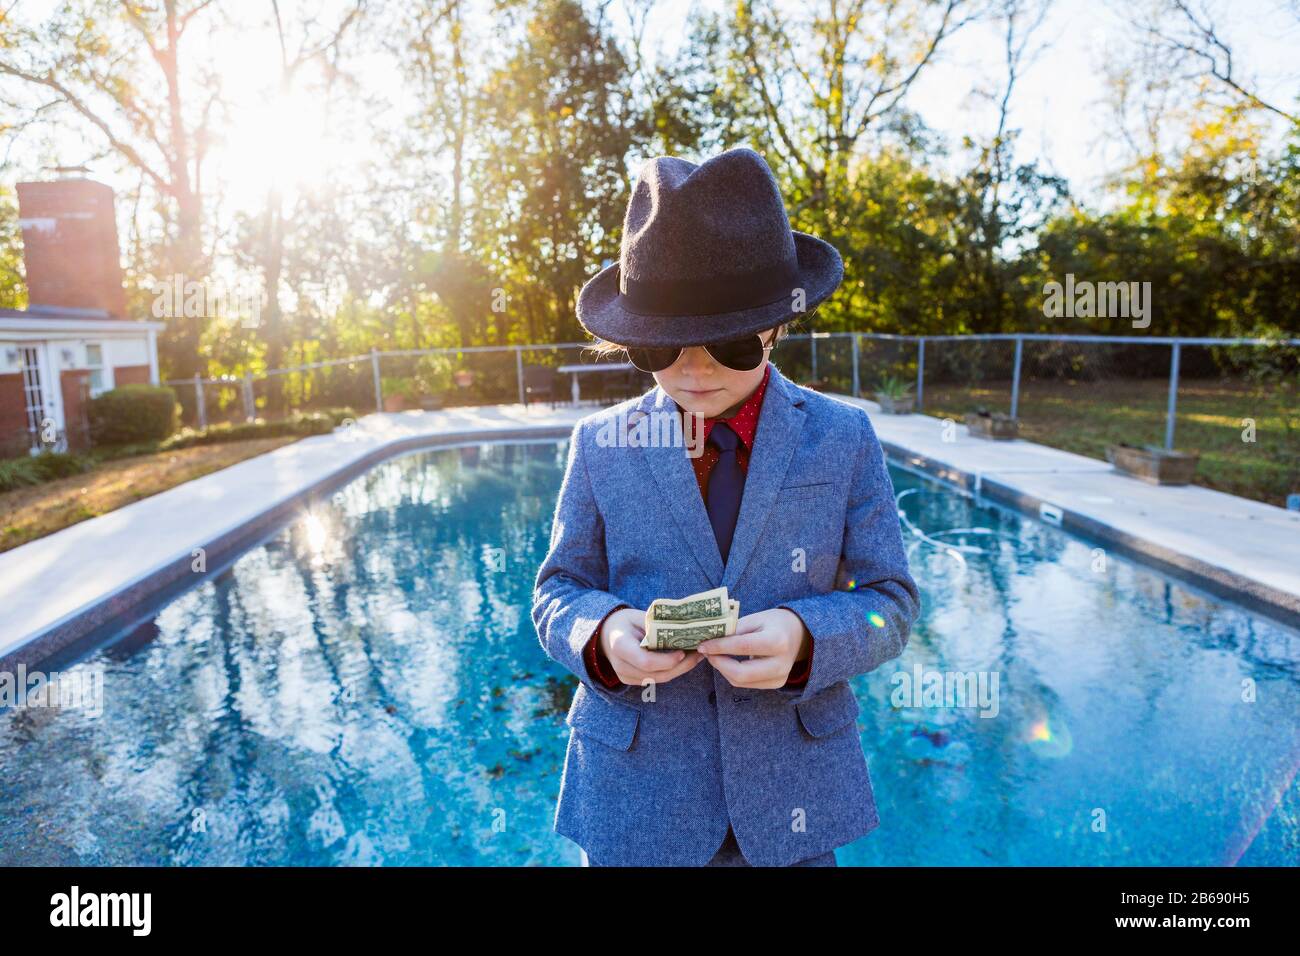 Junge in einem Anzug und dunkle Brille, die am Rande der Wasserzählung von Dollarscheinen steht. Stockfoto